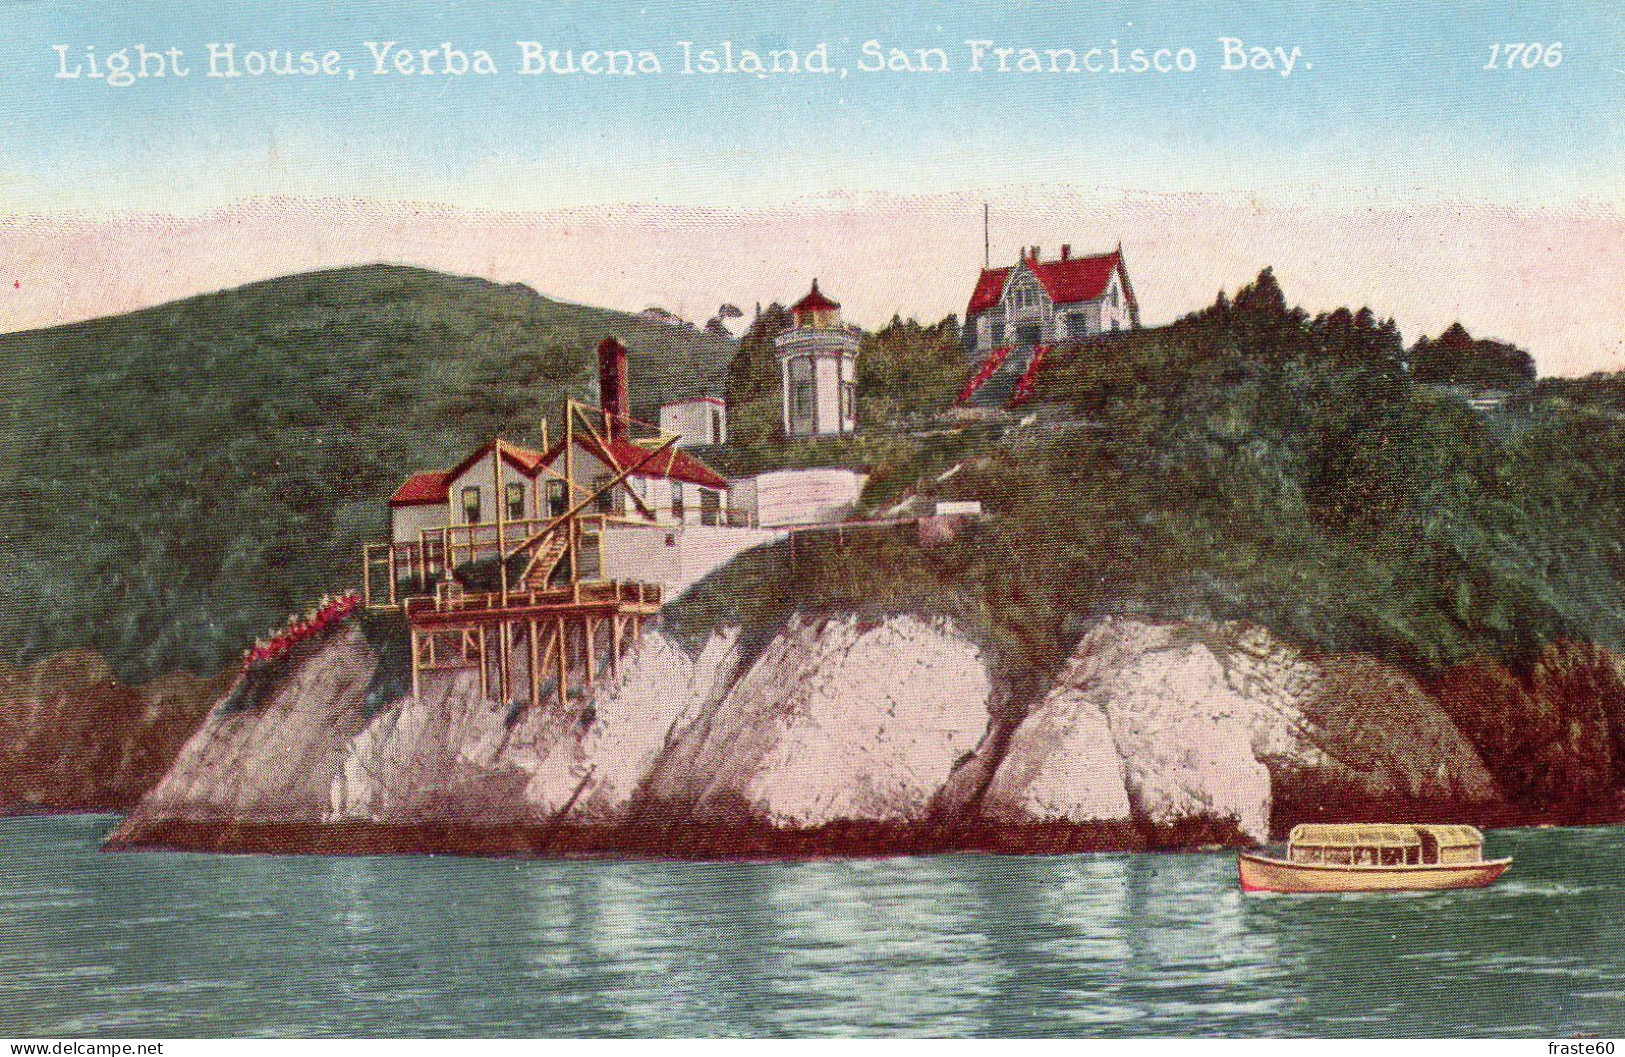 San Francisco Bay - Light House - Yerba Buena Island - San Francisco